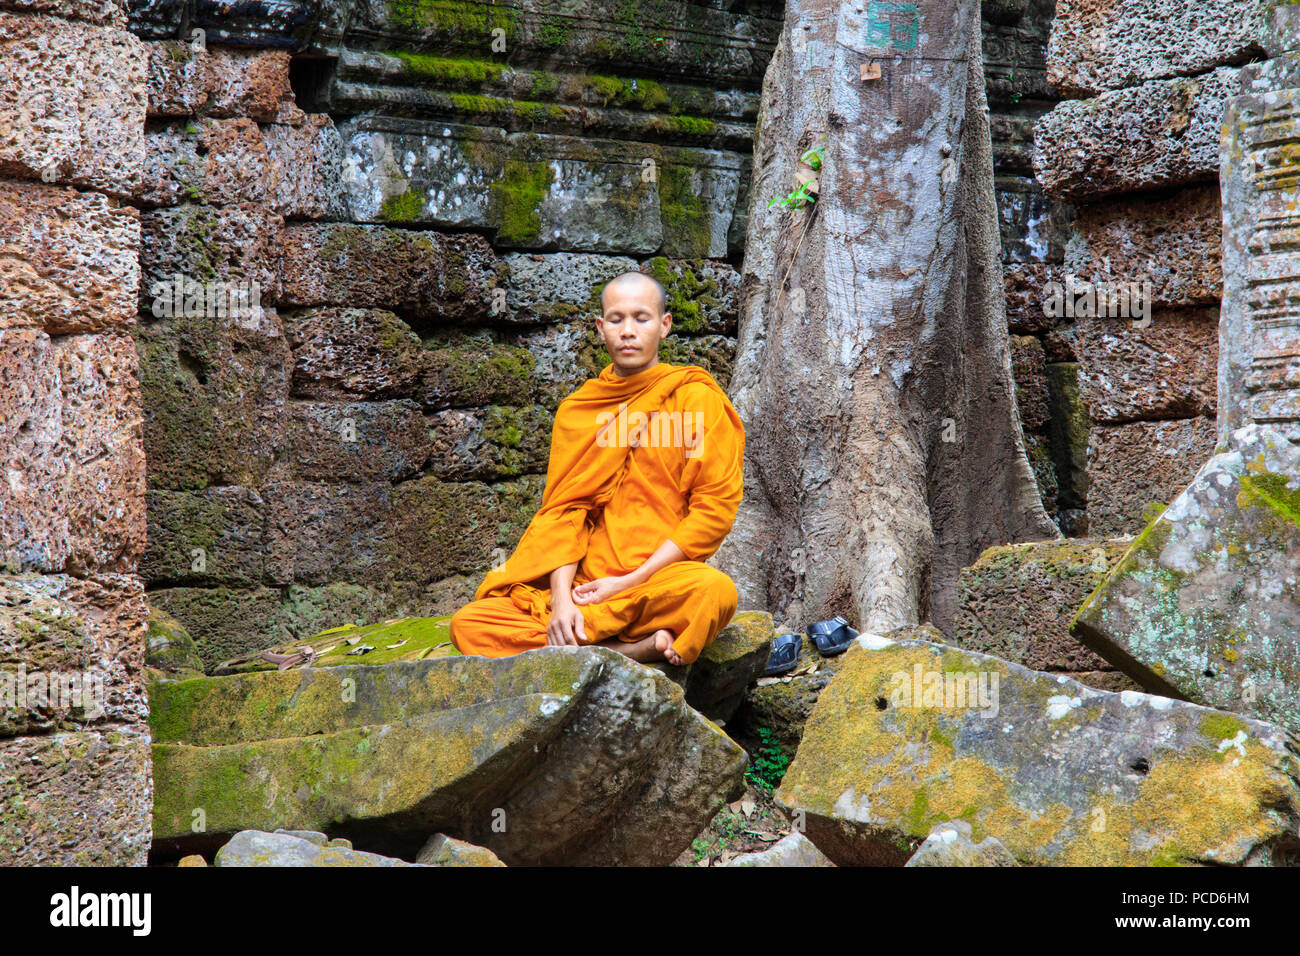 Monaco buddista seduto in una rovina tempio di Angkor, Sito Patrimonio Mondiale dell'UNESCO, Siem Reap, Cambogia, Indocina, Asia sud-orientale, Asia Foto Stock